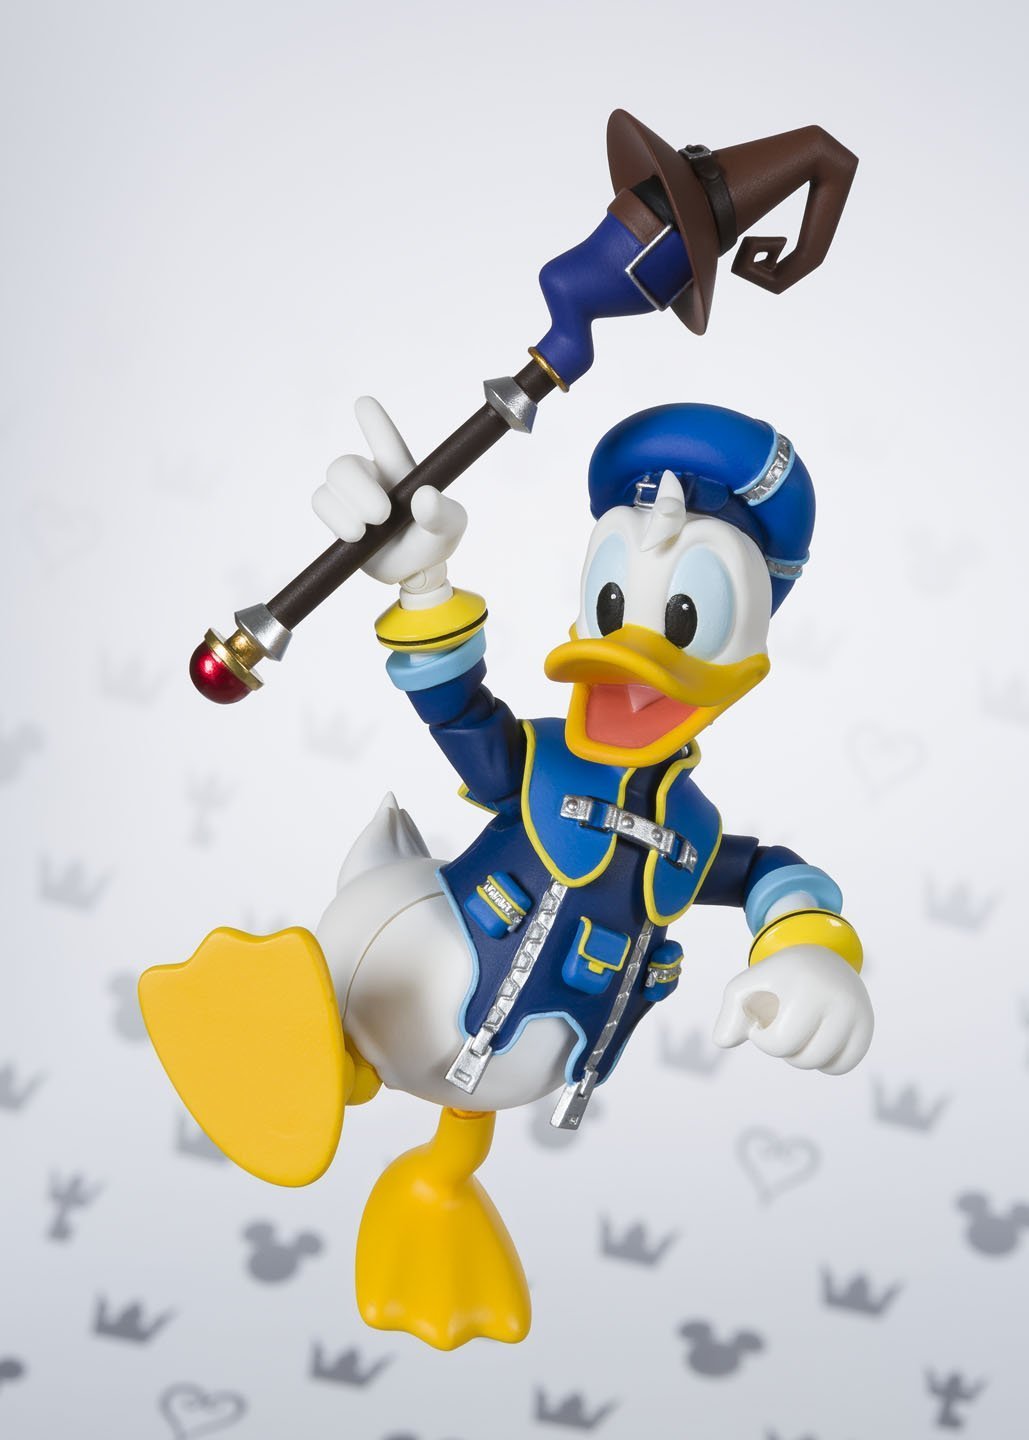 S.H. Figuarts - Kingdom Hearts II - Donald